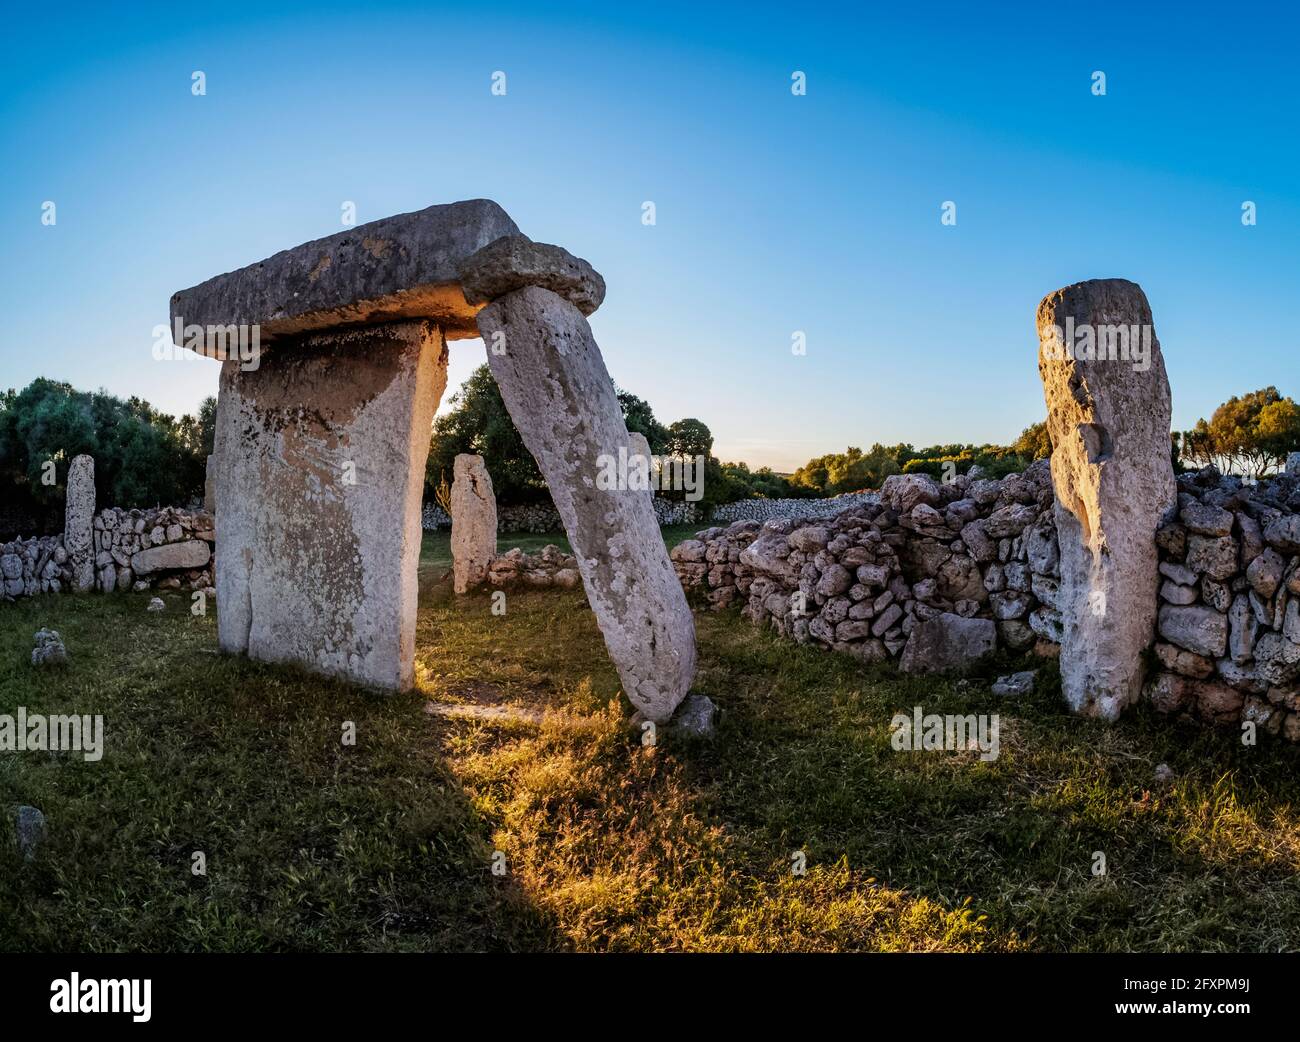 Taula al tramonto, sito archeologico di Talati de Dalt, Minorca (Minorca), Isole Baleari, Spagna, Mediterraneo, Europa Foto Stock